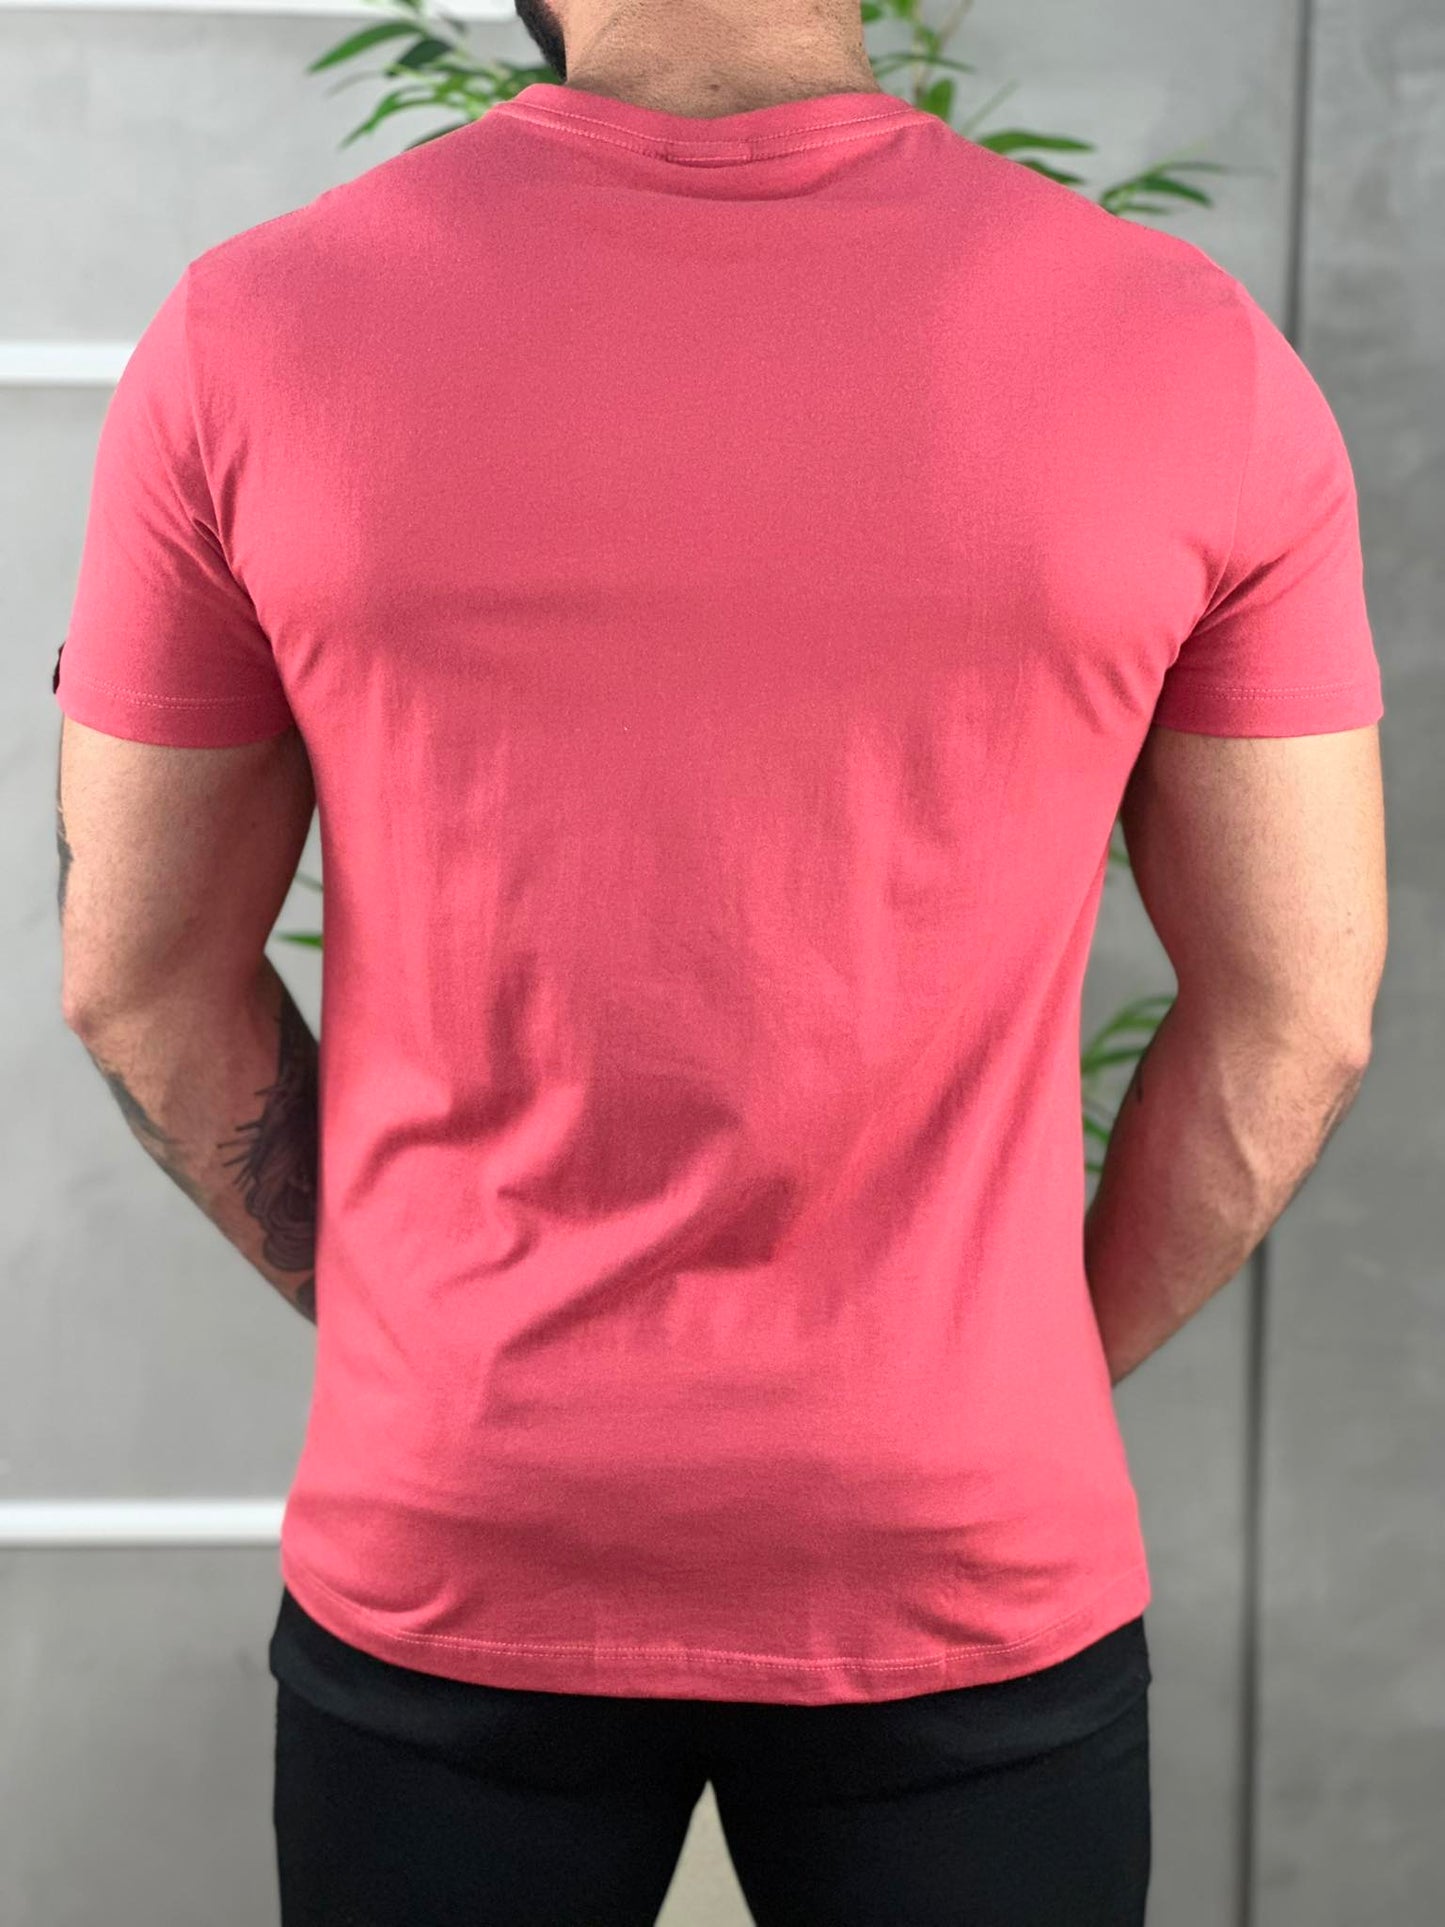 Camiseta Rosa Masculina Lisa Com Logo No Peito - Paladho's Jeans Wear